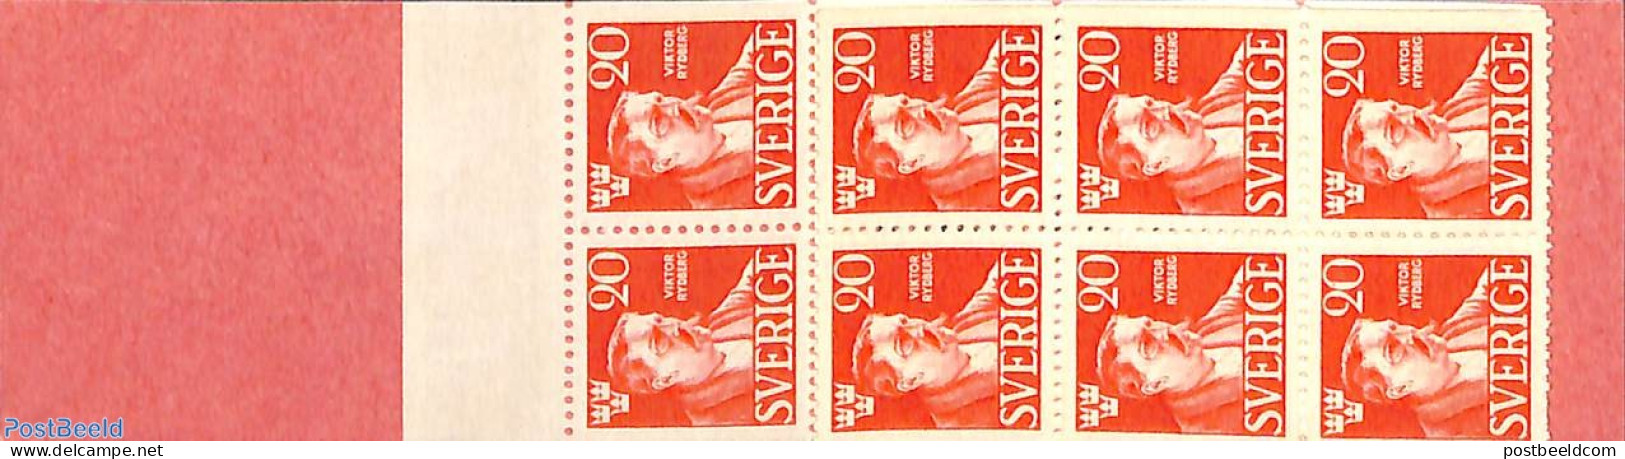 Sweden 1945 Viktor Rydberg Booklet, Mint NH, Stamp Booklets - Art - Authors - Ongebruikt